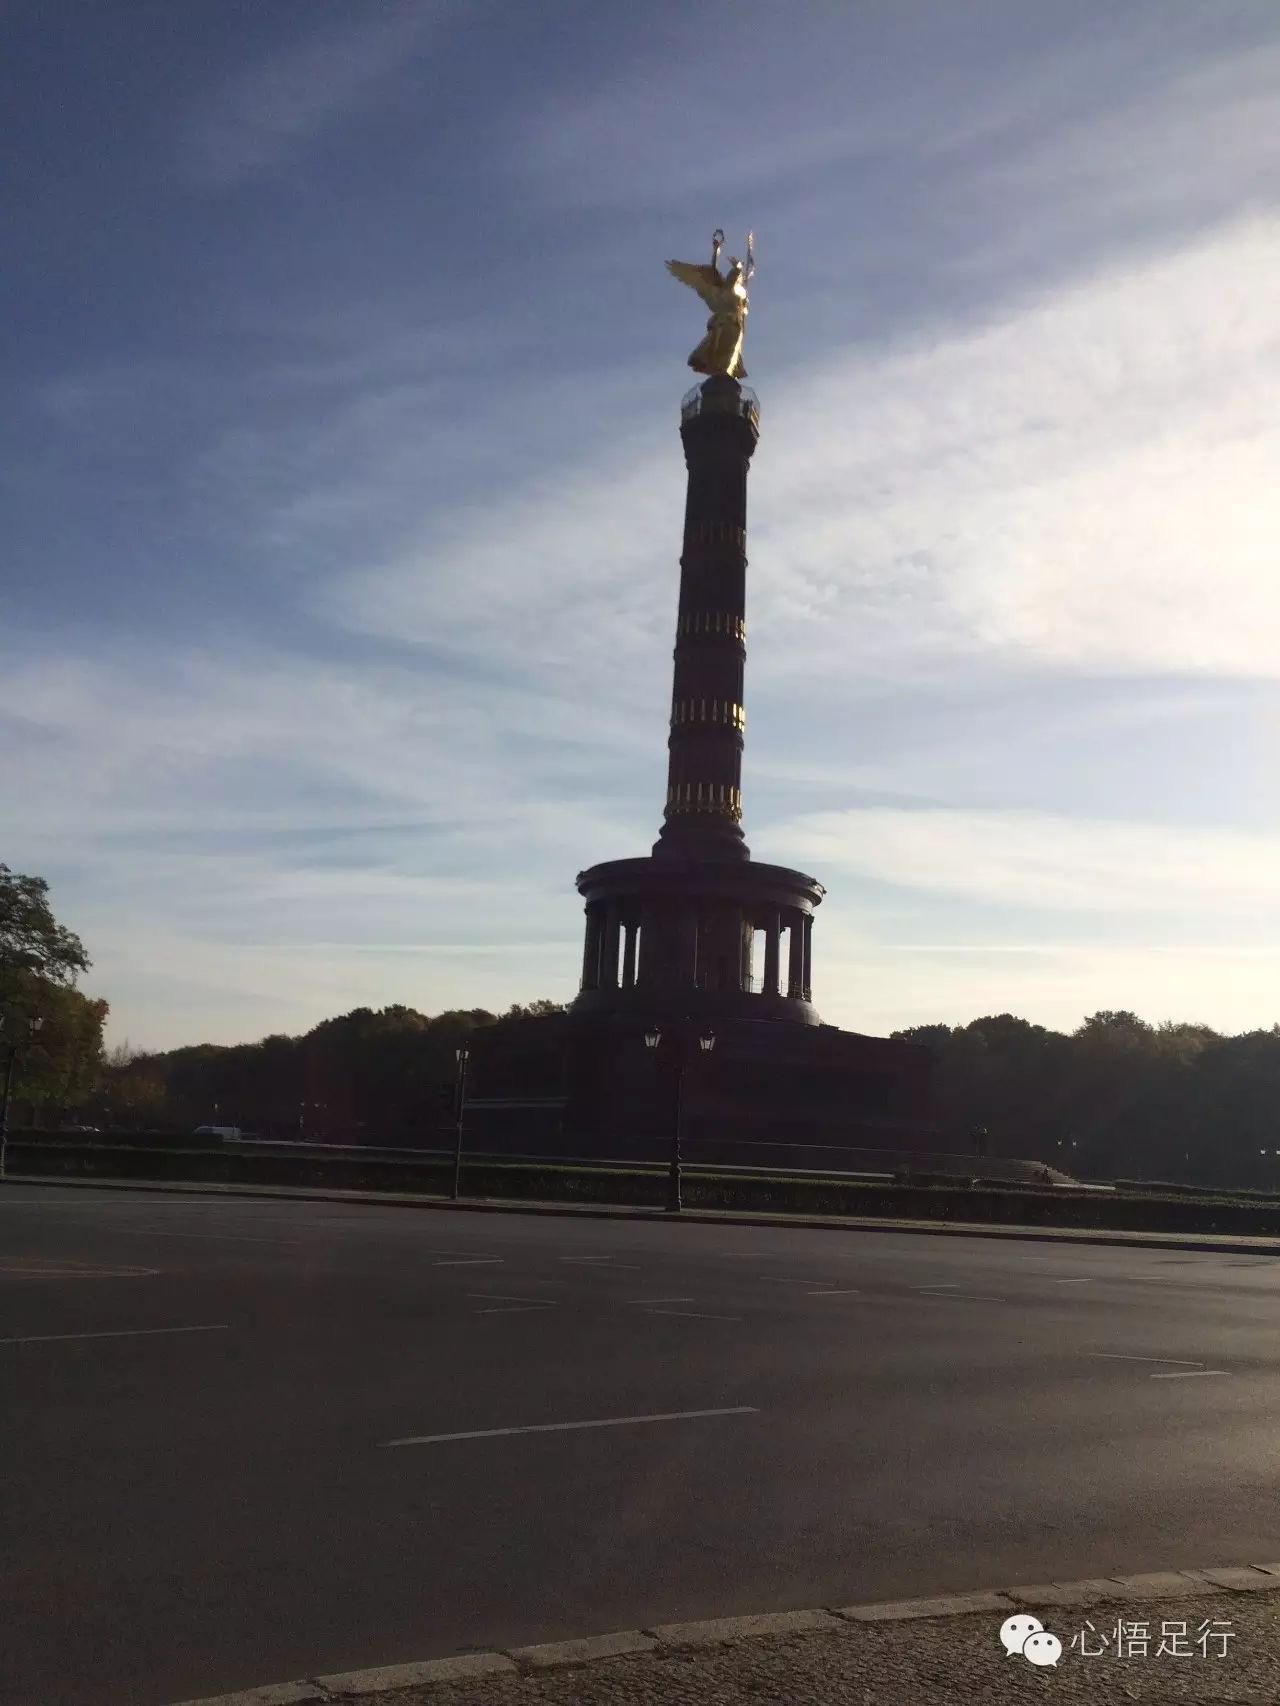 勝利紀念柱 - 柏林